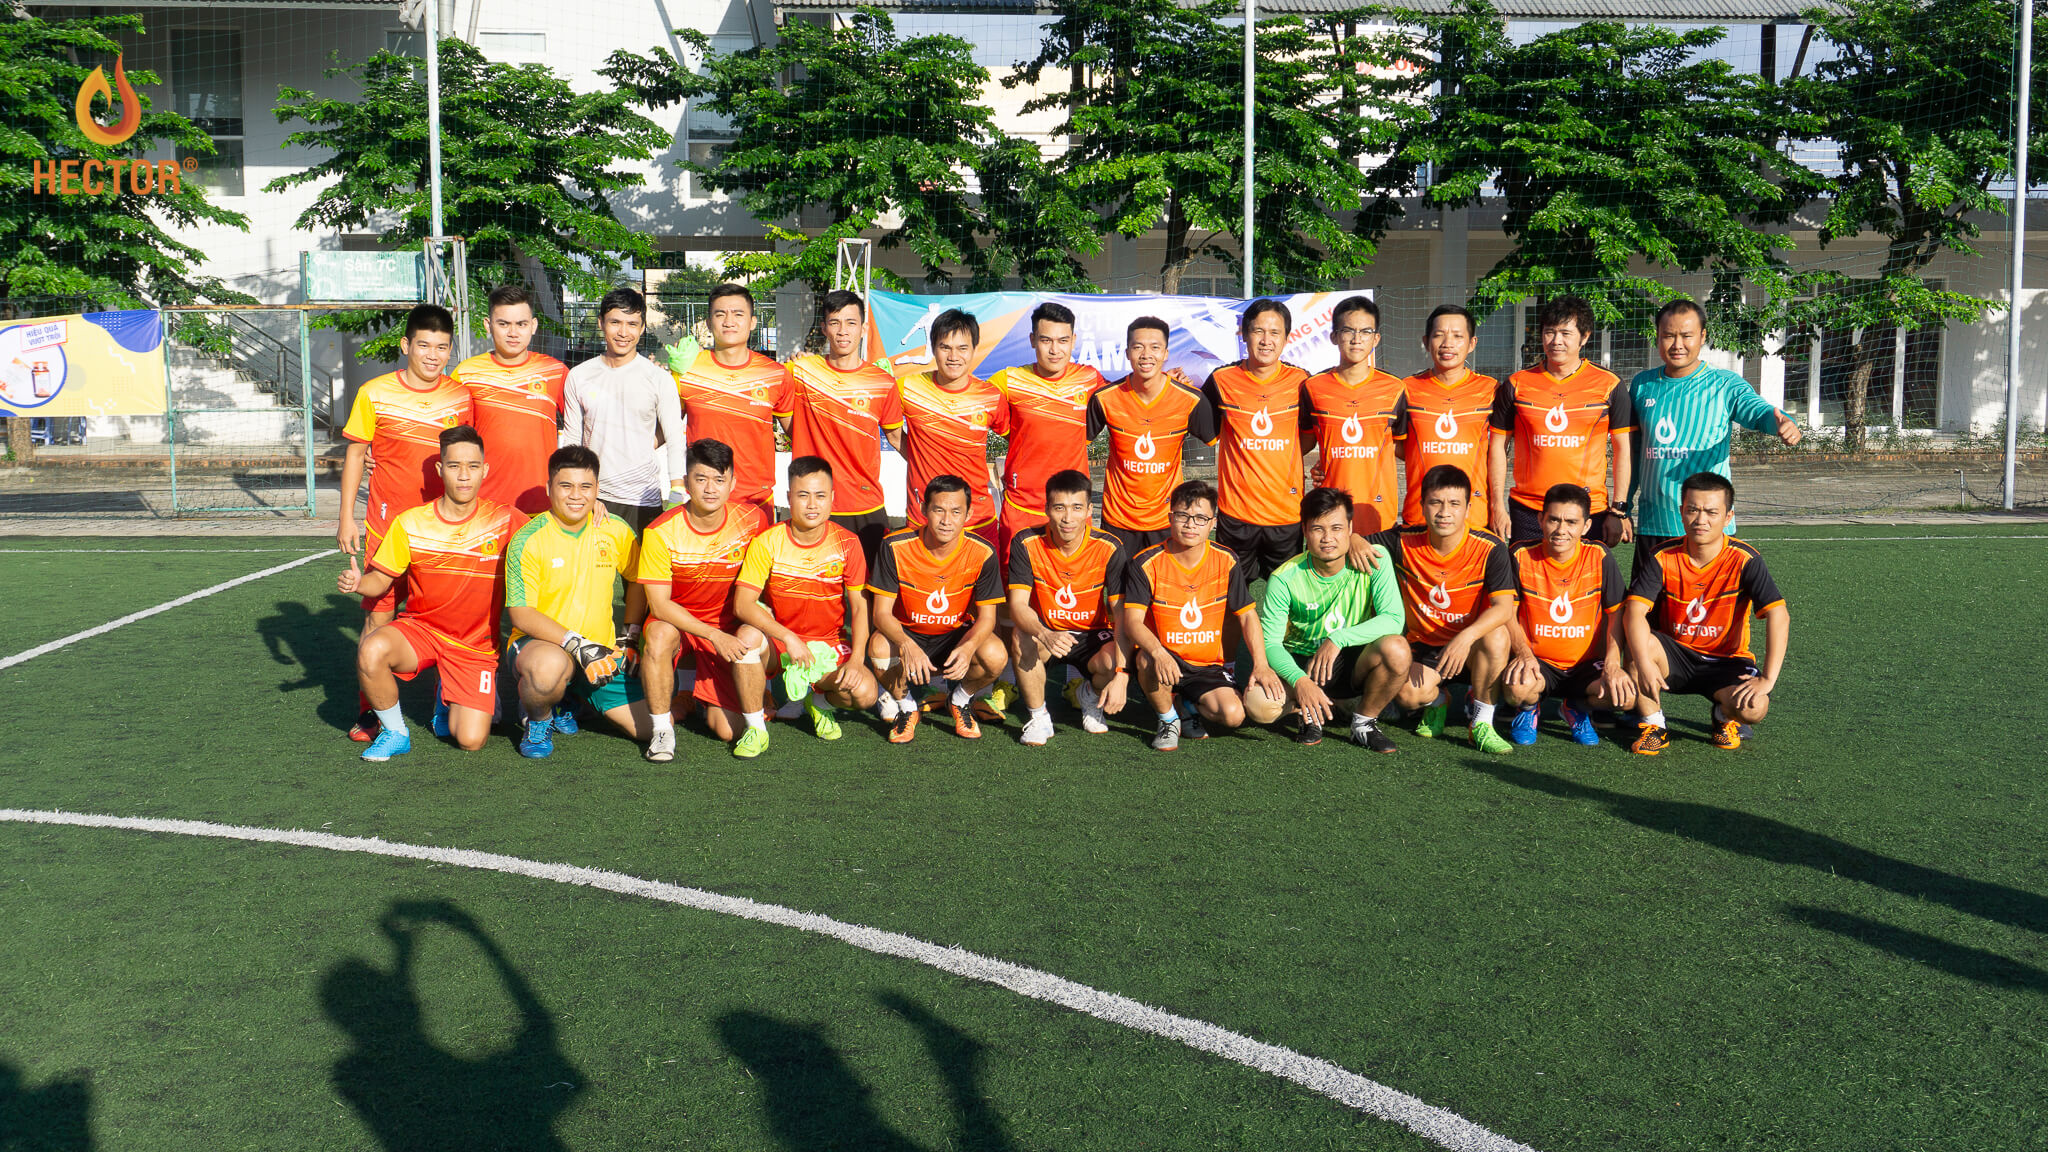 Giao lưu bóng đá cùng 2 cựu cầu thủ đội tuyển Việt Nam Minh Phương và Vũ Phong